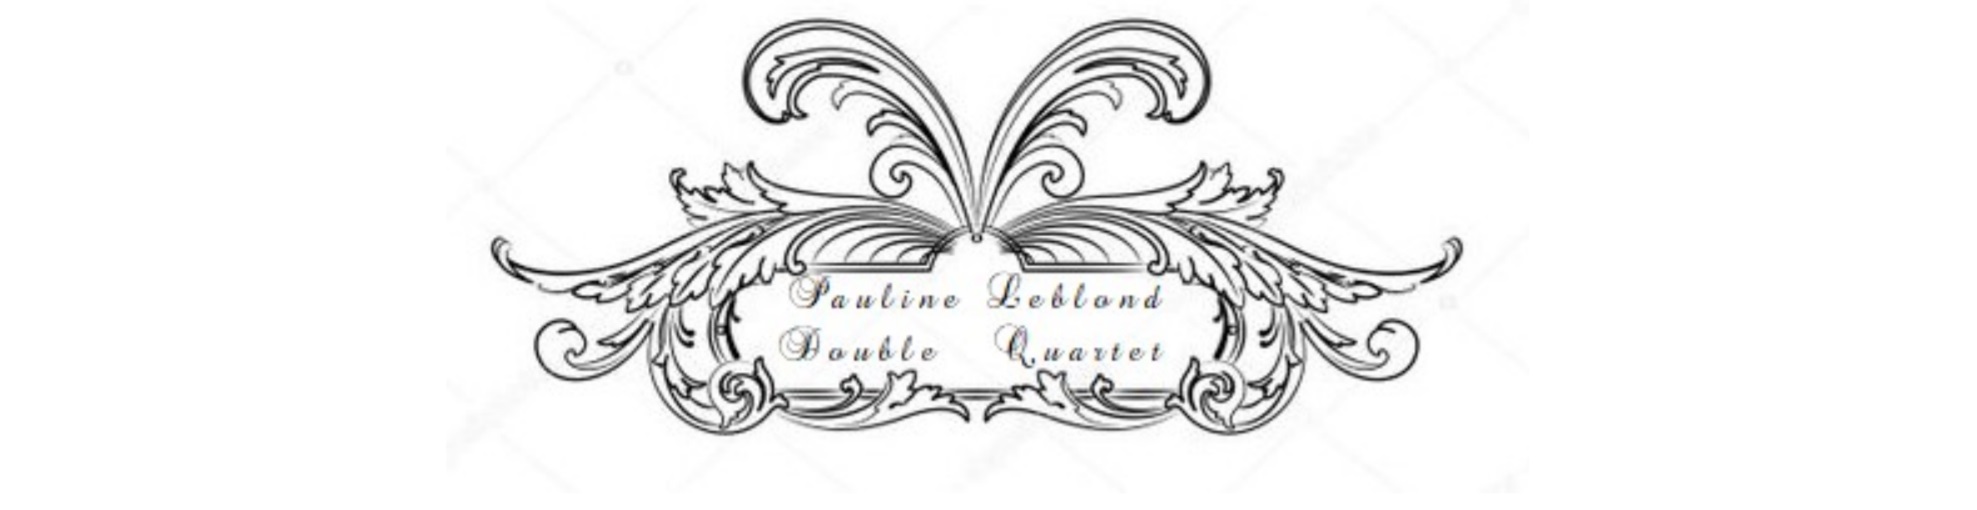 Pauline Leblond Double Quartet